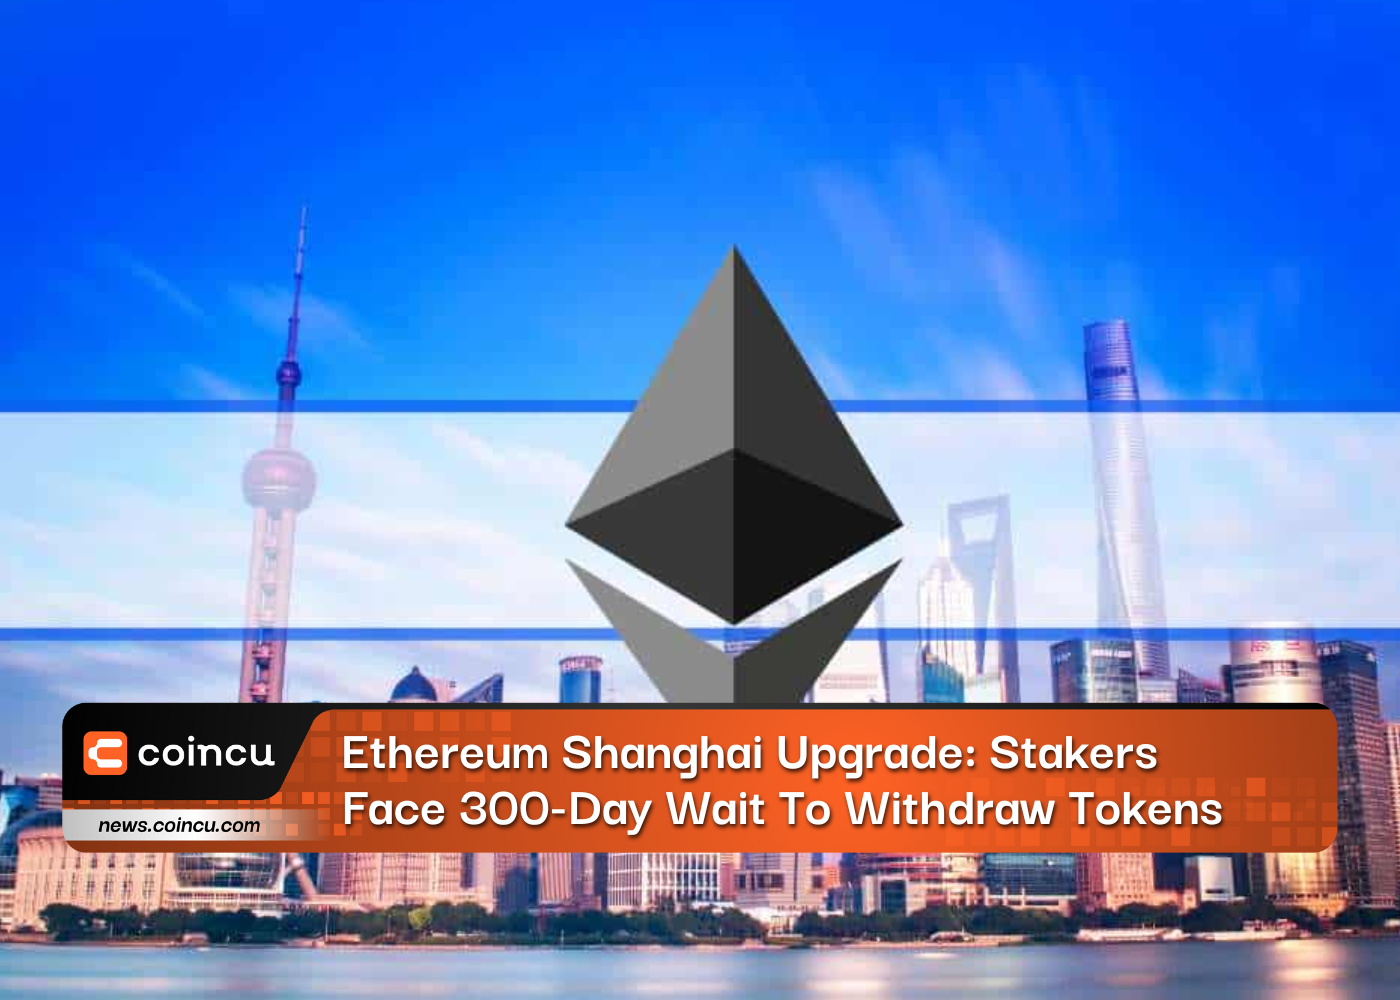 Upgrade von Ethereum Shanghai: Staker müssen 300 Tage warten, um Token abzuheben